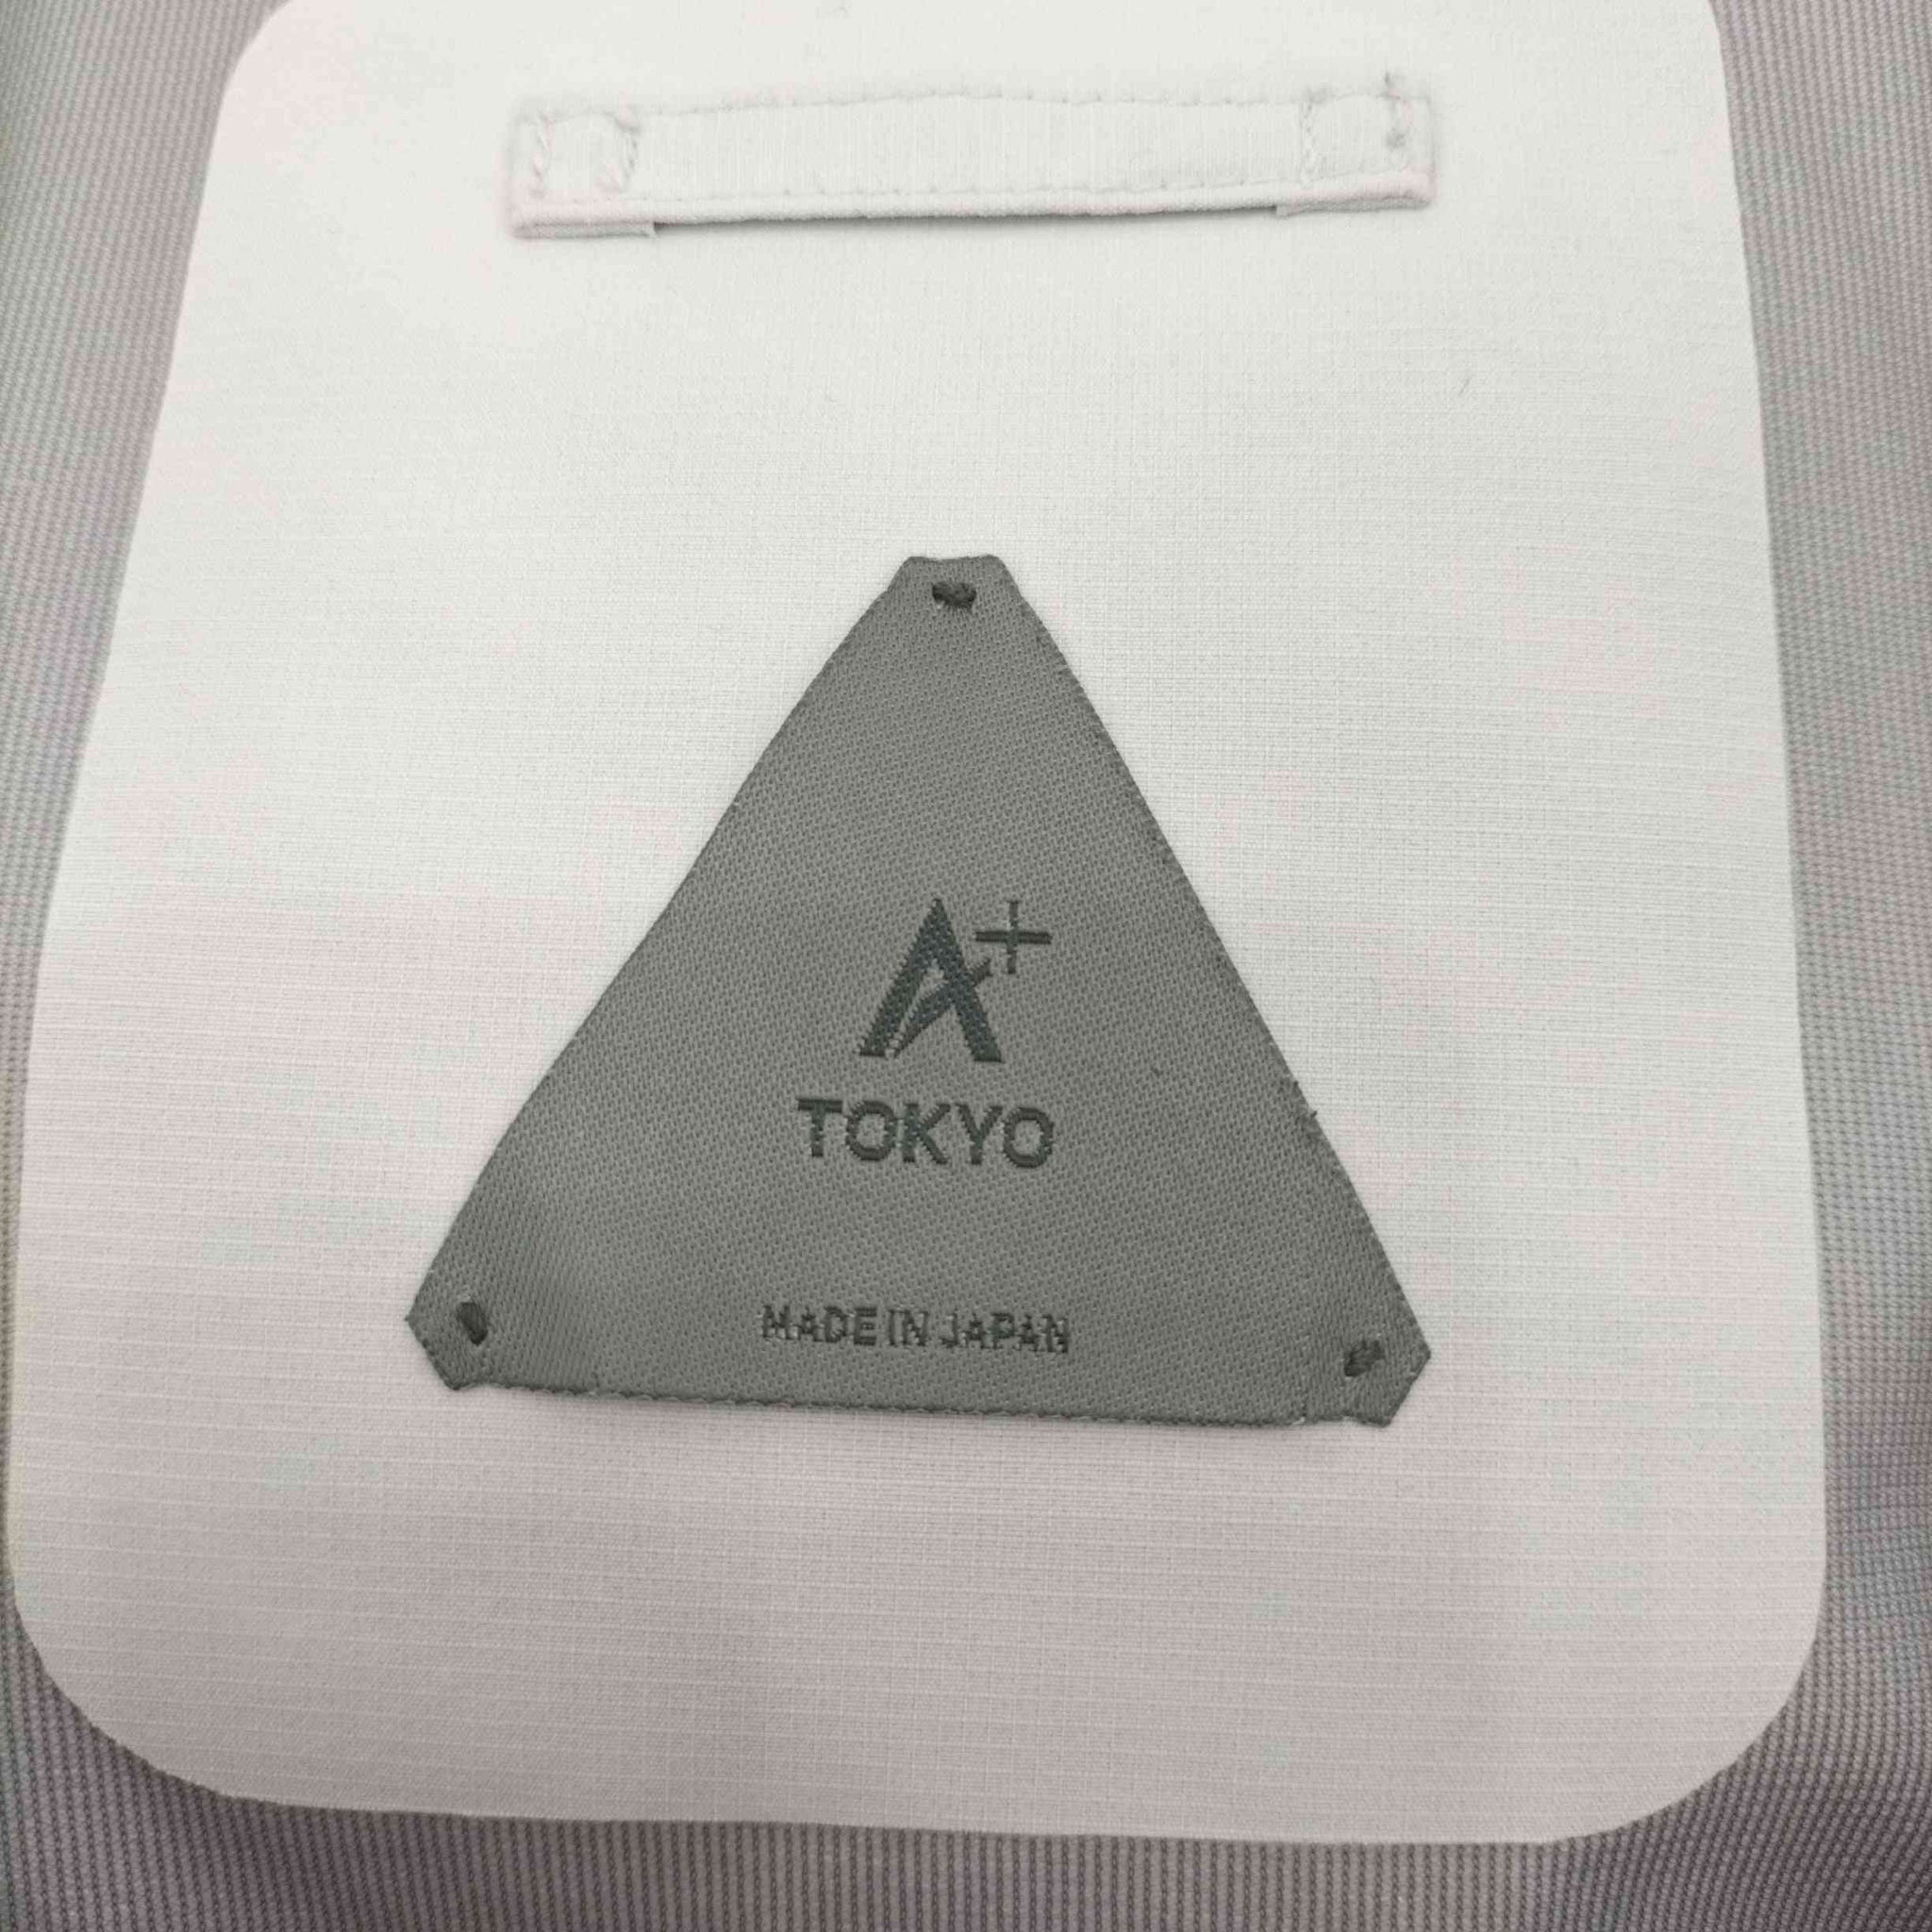 UNITED TOKYO(ユナイテッドトウキョウ)A+ TOKYO / TOKYO TEX 3レイヤーマウンテンパーカー